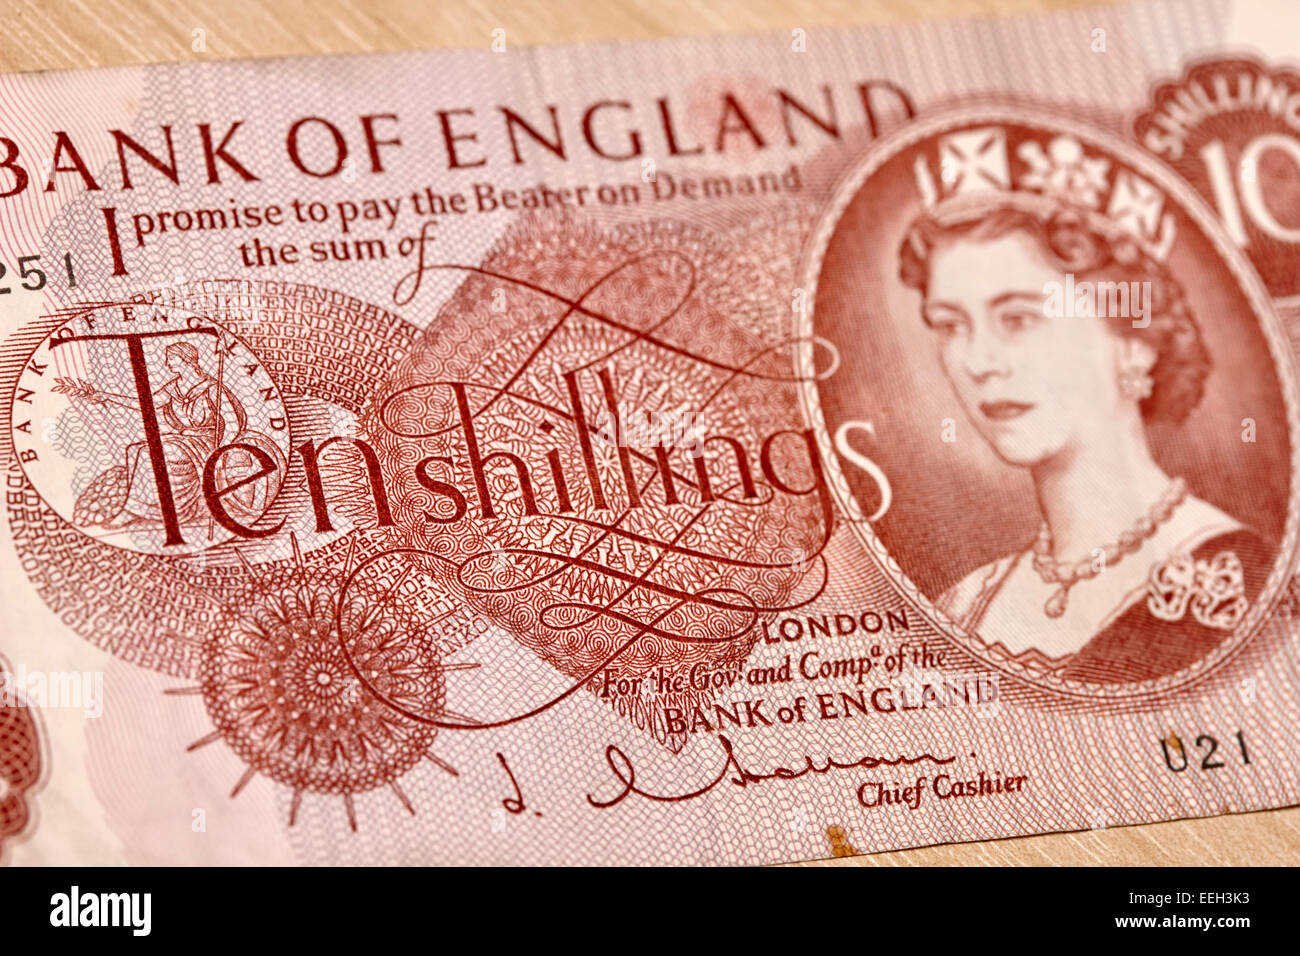 J q hollom la reine Elizabeth la deuxième décimale sur dix shilling remarque banque d'angleterre Banque D'Images